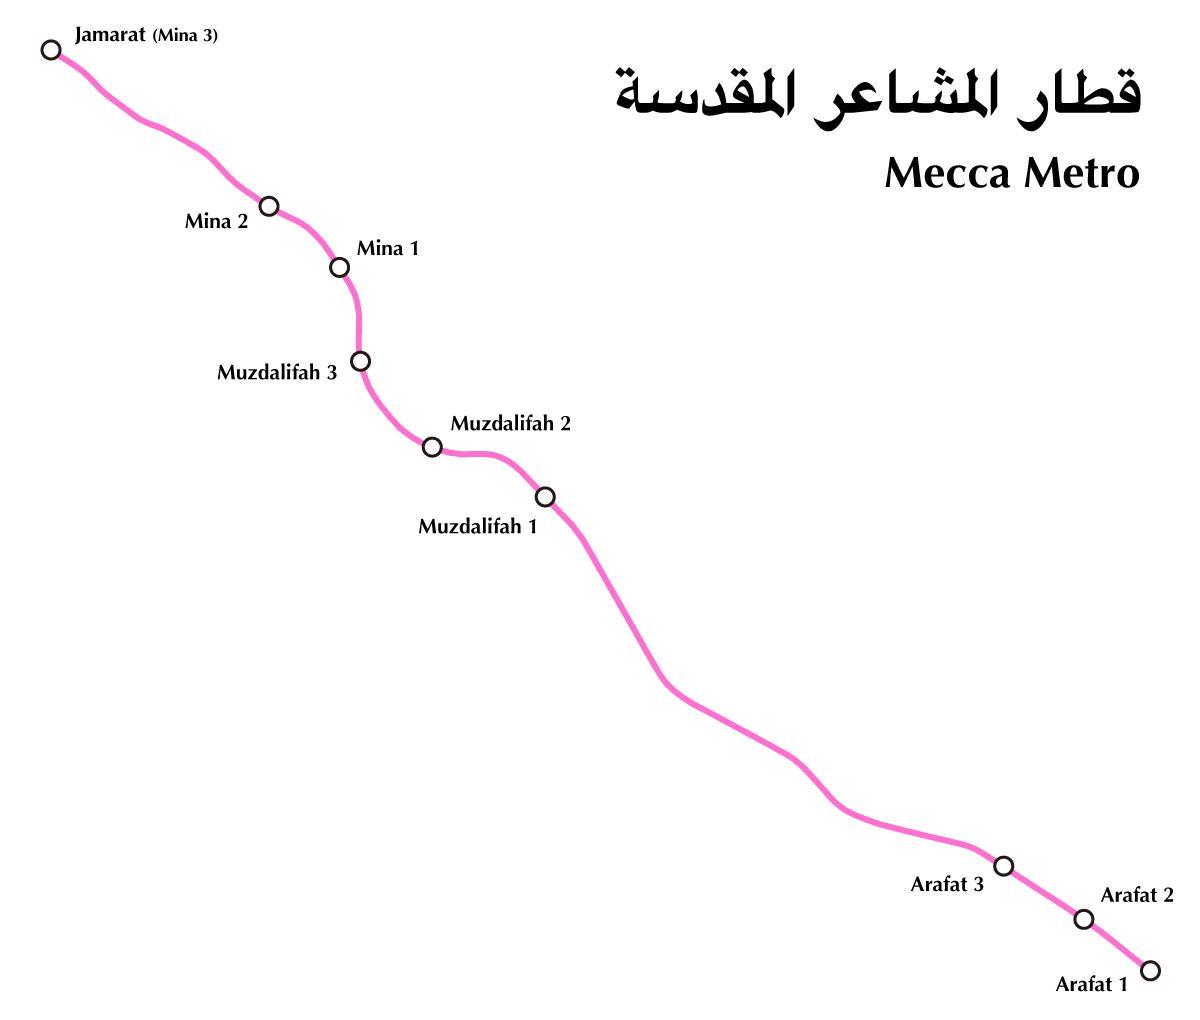 Mappa dei trasporti della Mecca (Makkah)